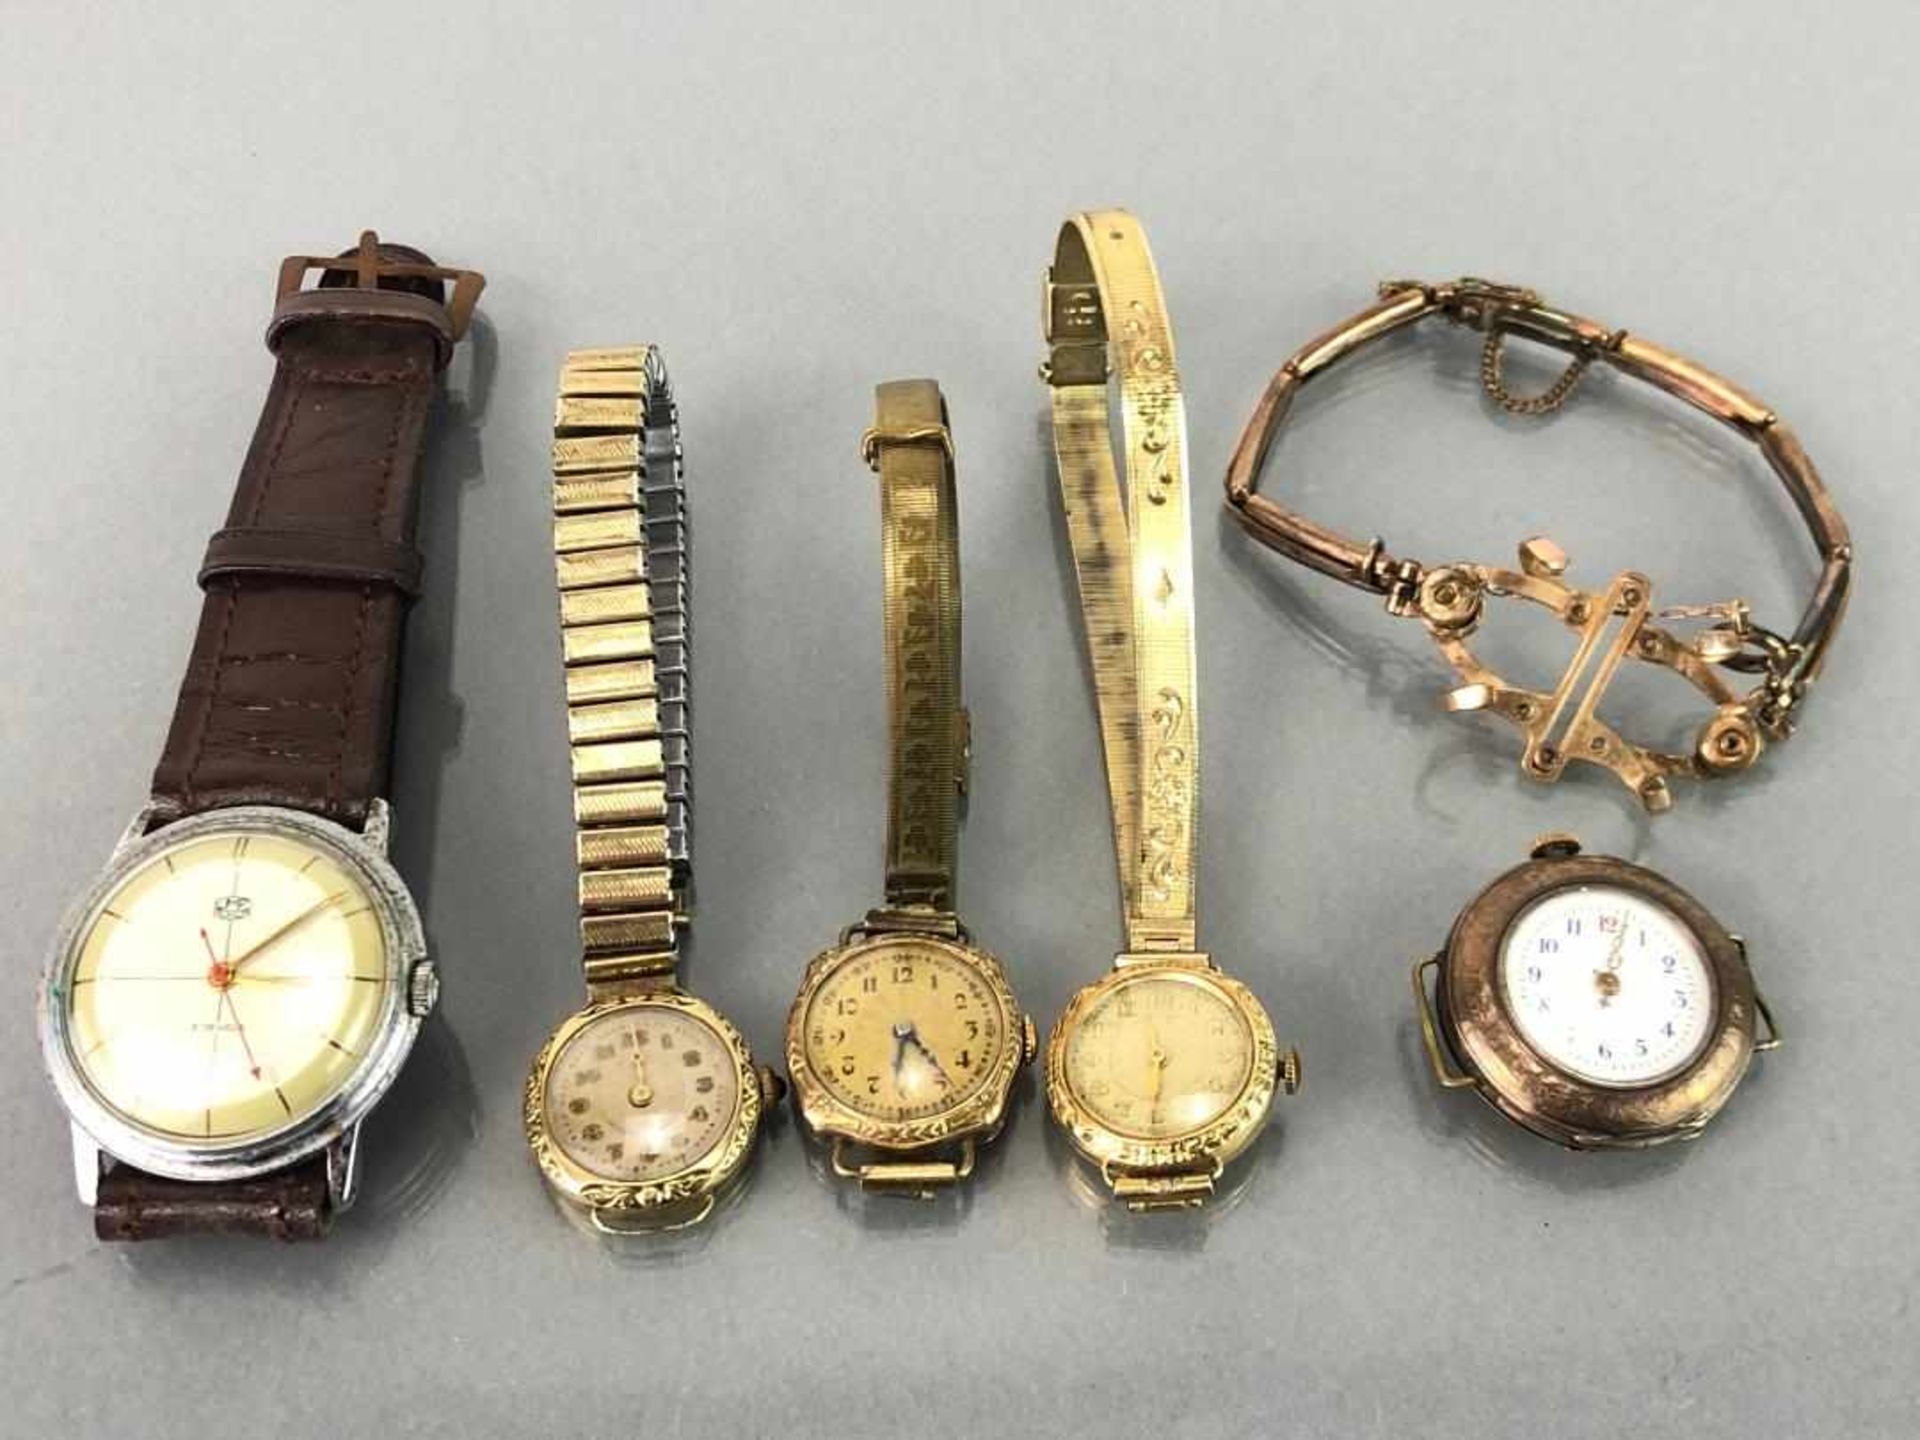 Vier Damenarmbanduhren und eine Herrenarmbanduhr, Jugendstil. Eine Uhrenkralle. Gold-Doublée, sehr